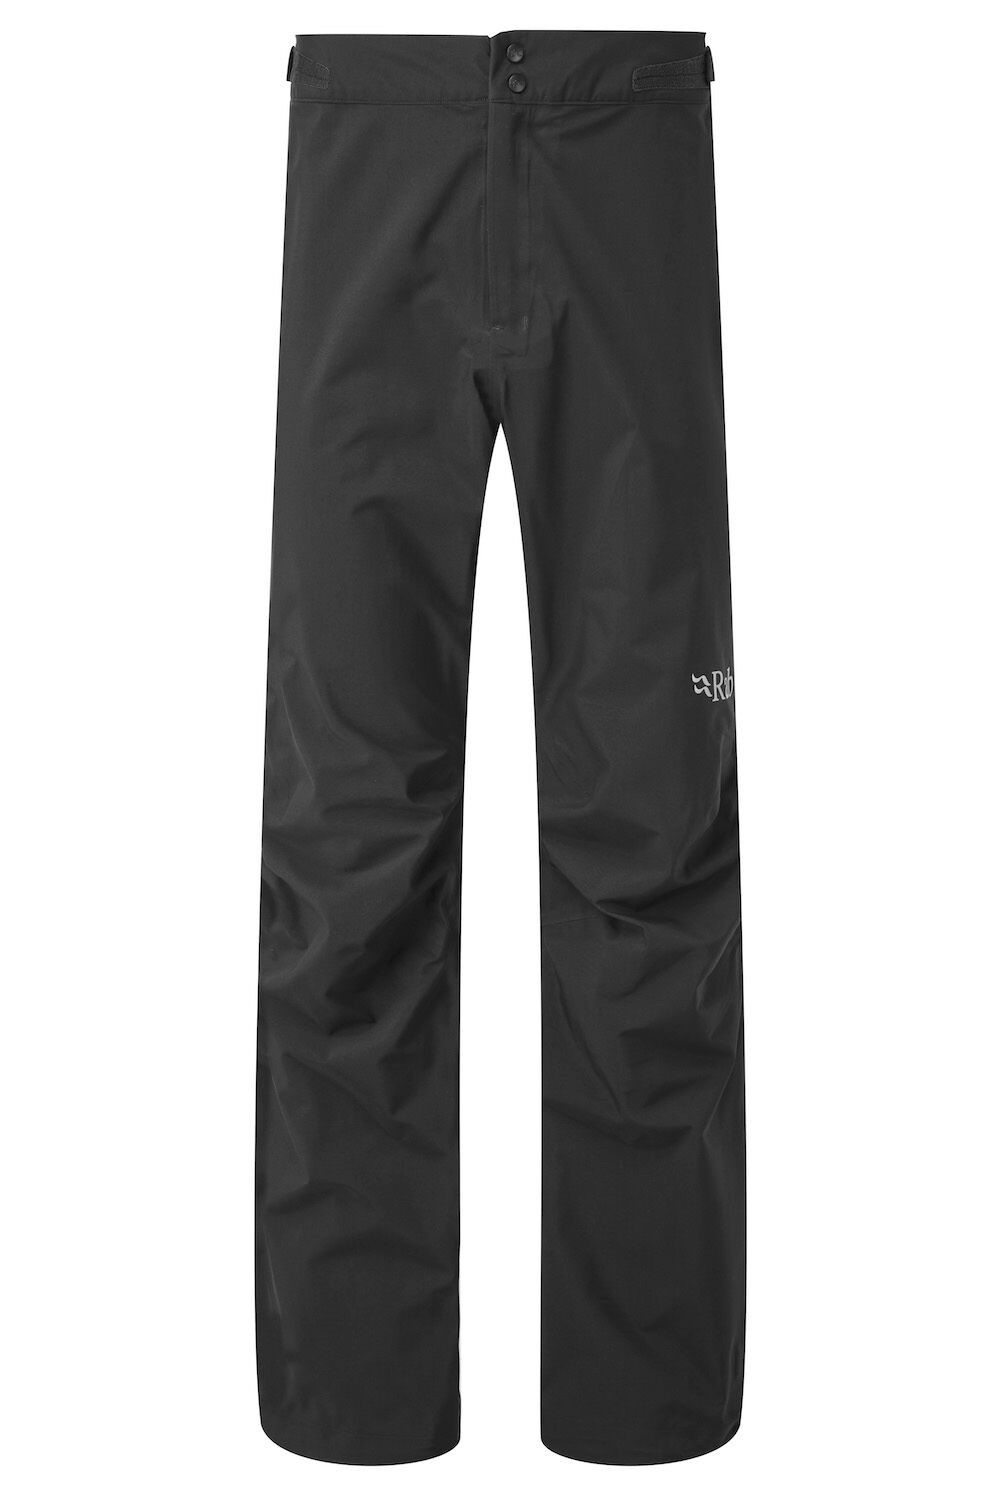 Rab Kangri GTX Pants - Pantalon imperméable homme | Hardloop